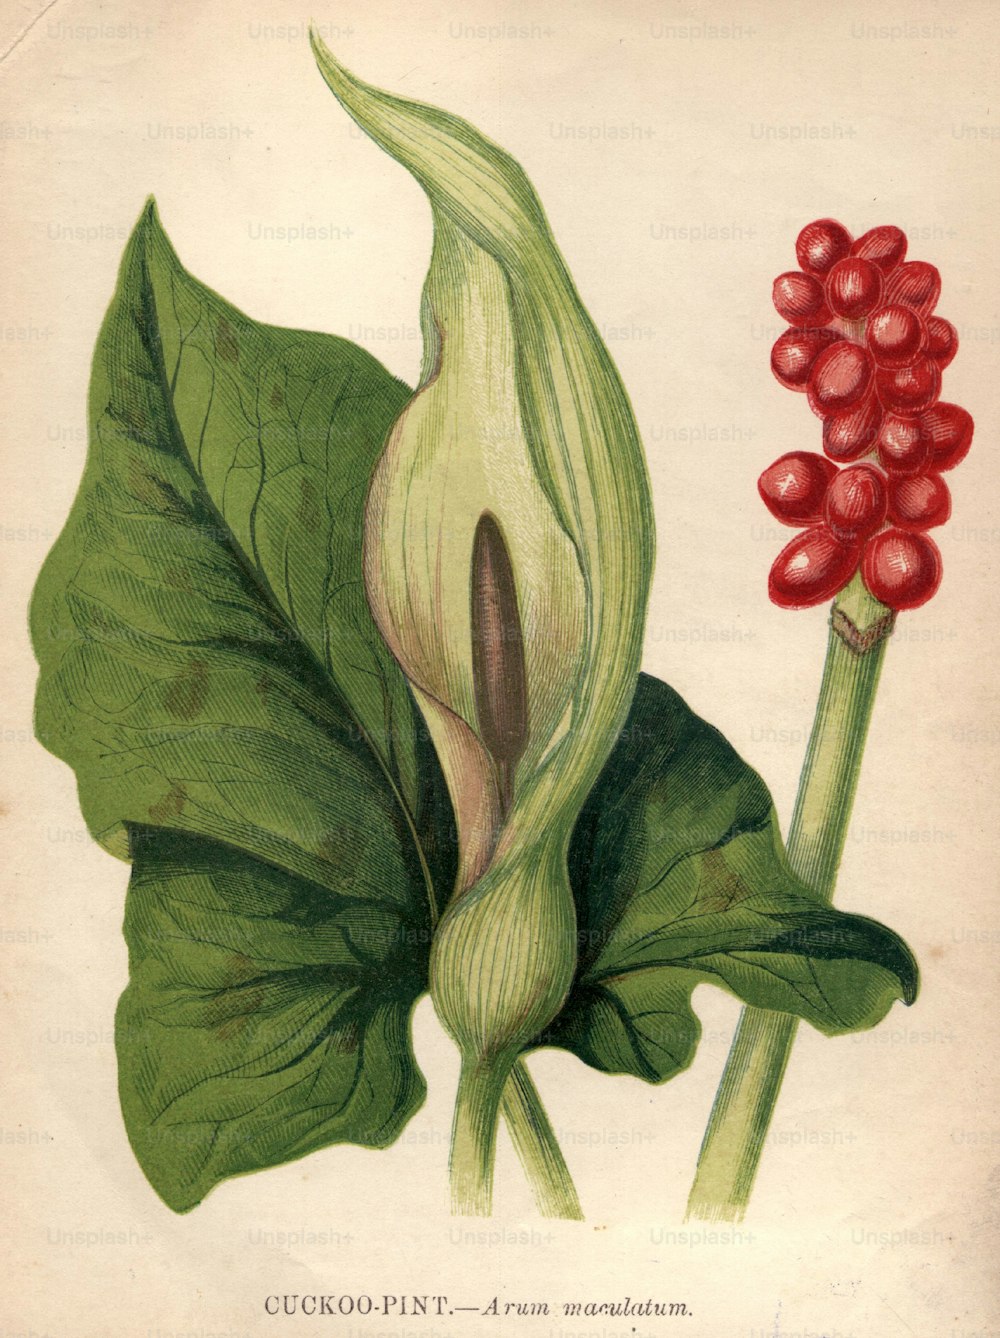 um 1900: Arum maculatum oder Kuckuckspint, auch bekannt als Wake Robin und Lords-and-Ladies, mit seinen hochgiftigen roten Beeren.  (Foto von Hulton Archive / Getty Images)